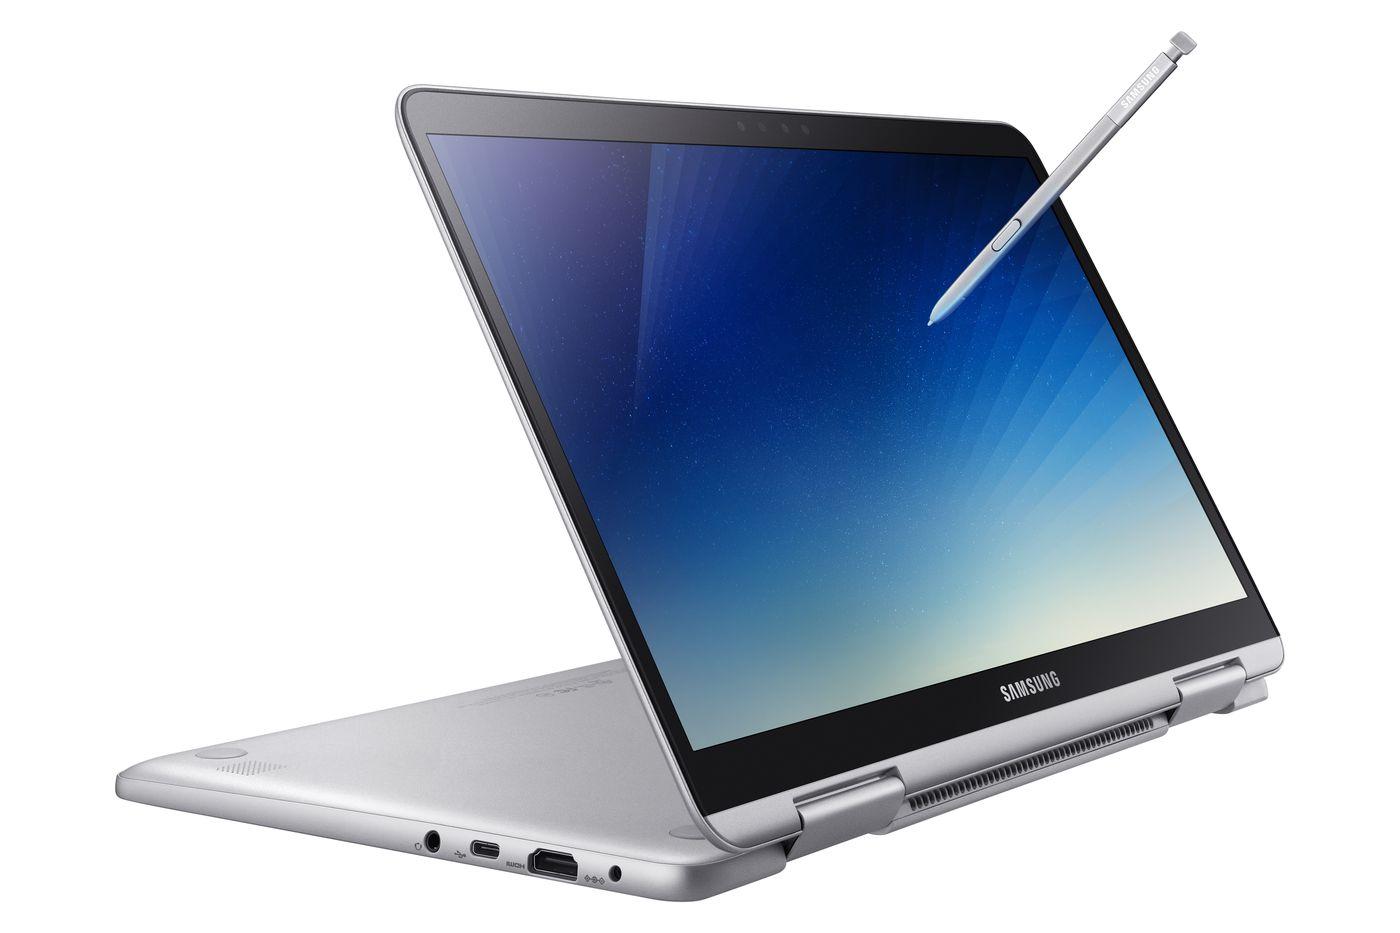 Uso del S pen en el Samsung Notebook 9 Pen